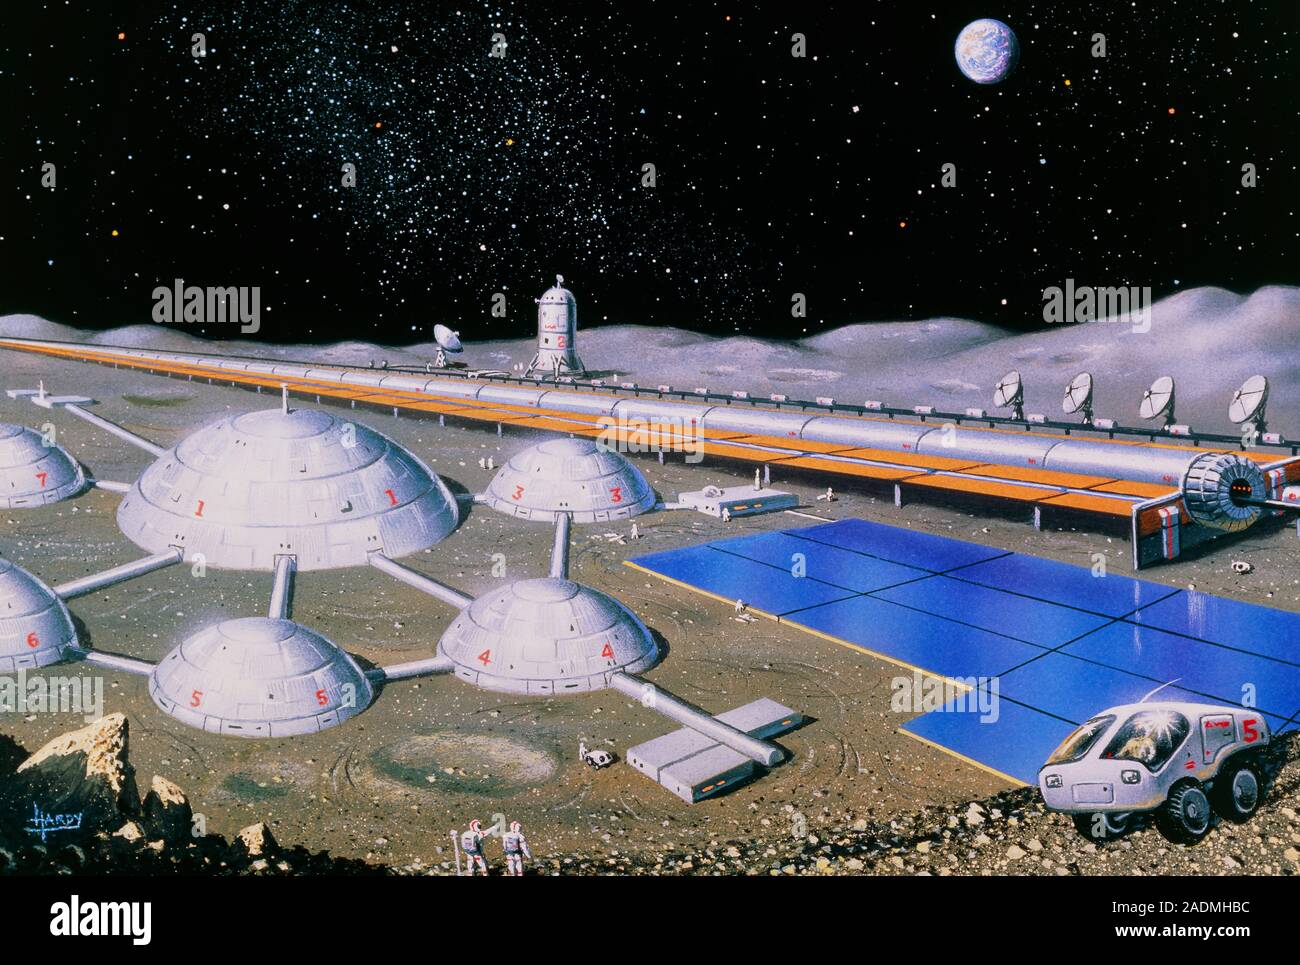 Лунная база 2020. "Лунная база 8" (Showtime). Колонизация Луны проекты. Космическая база. Космические станции будущего.